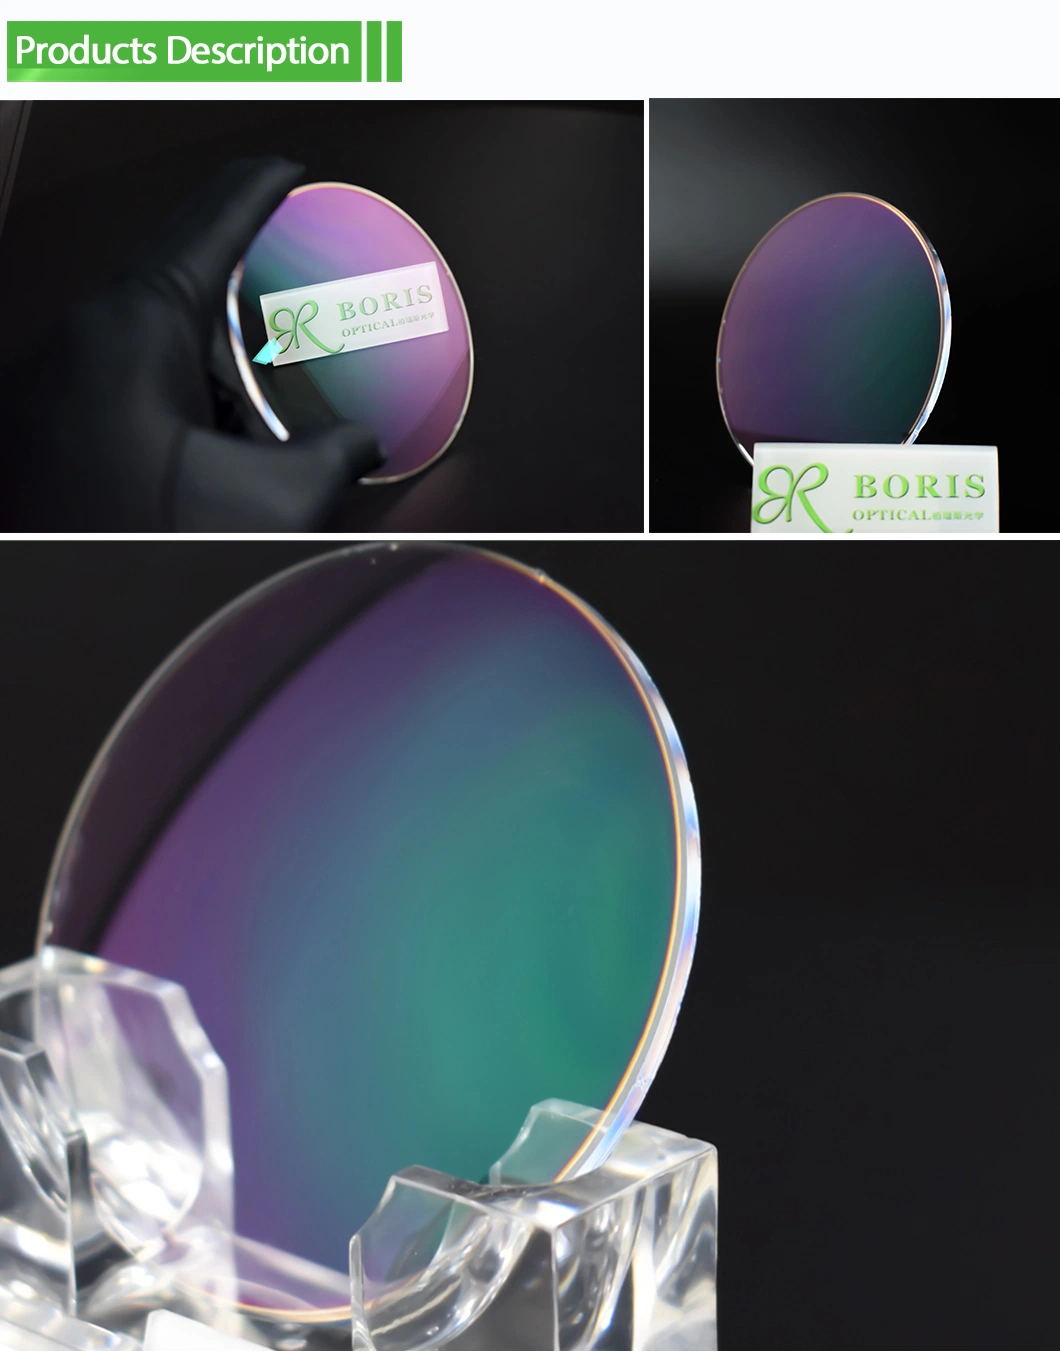 Spectacles Lens High Index 1.71 Hmc Asp UV400 EMI Eyeglass Optical Lenses